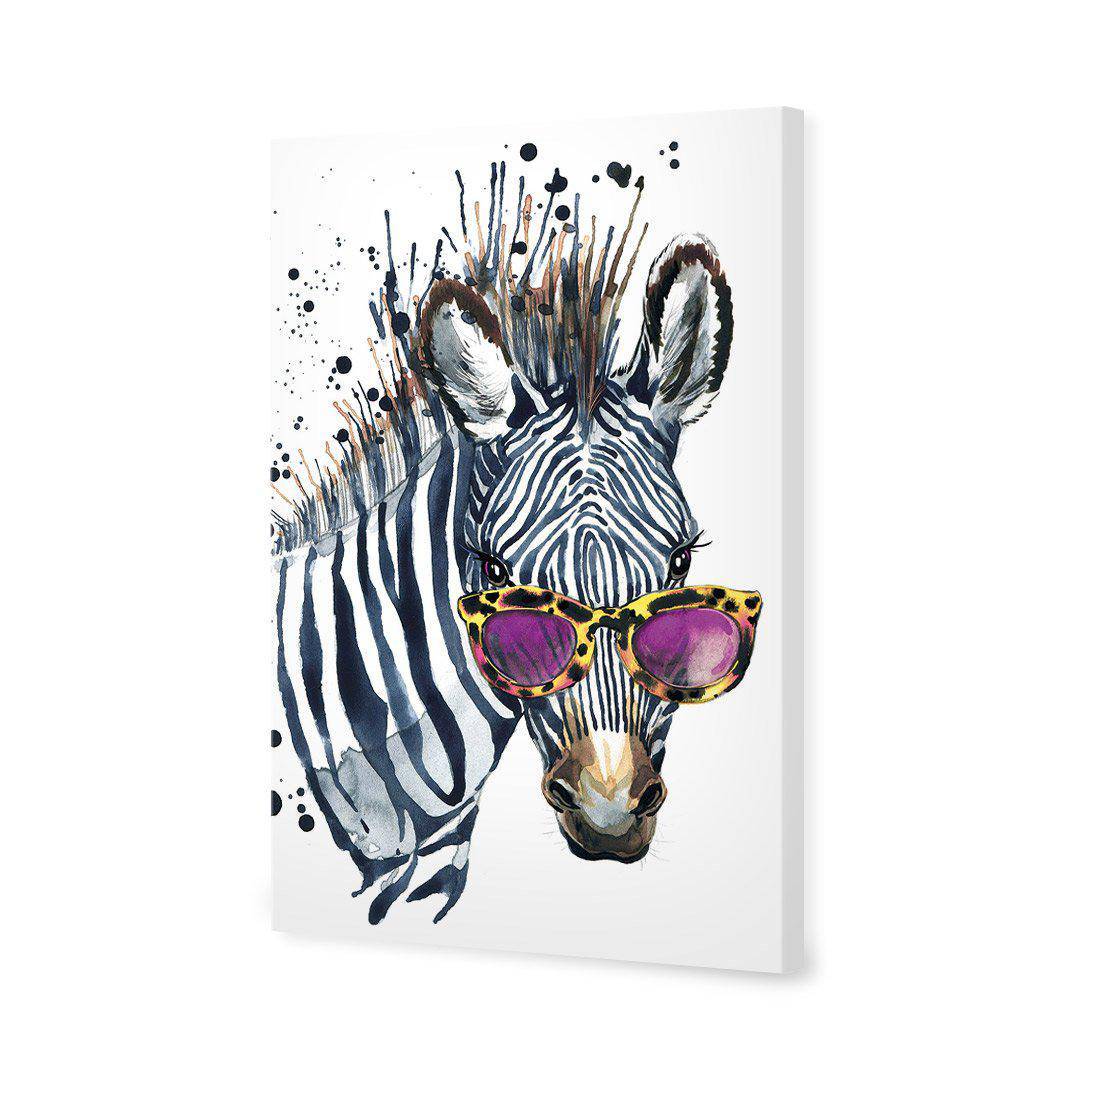 Cool Zebra Canvas Art-Canvas-Wall Art Designs-45x30cm-Canvas - No Frame-Wall Art Designs